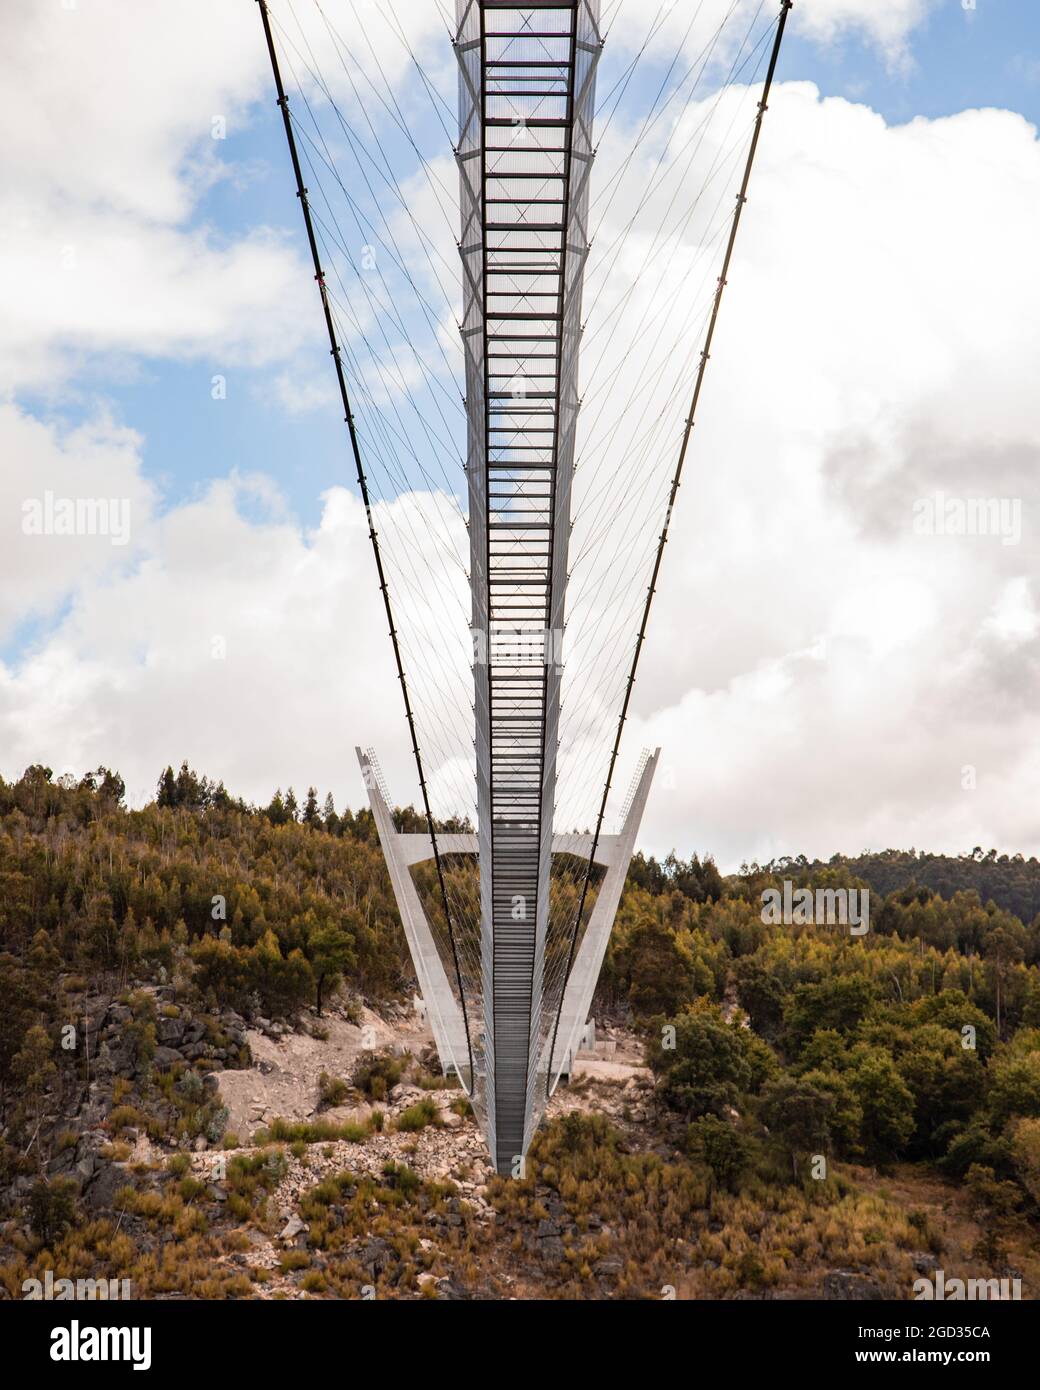 World longest pedestrian suspended bridge in Passadiços do Paiva in Arouca Stock Photo